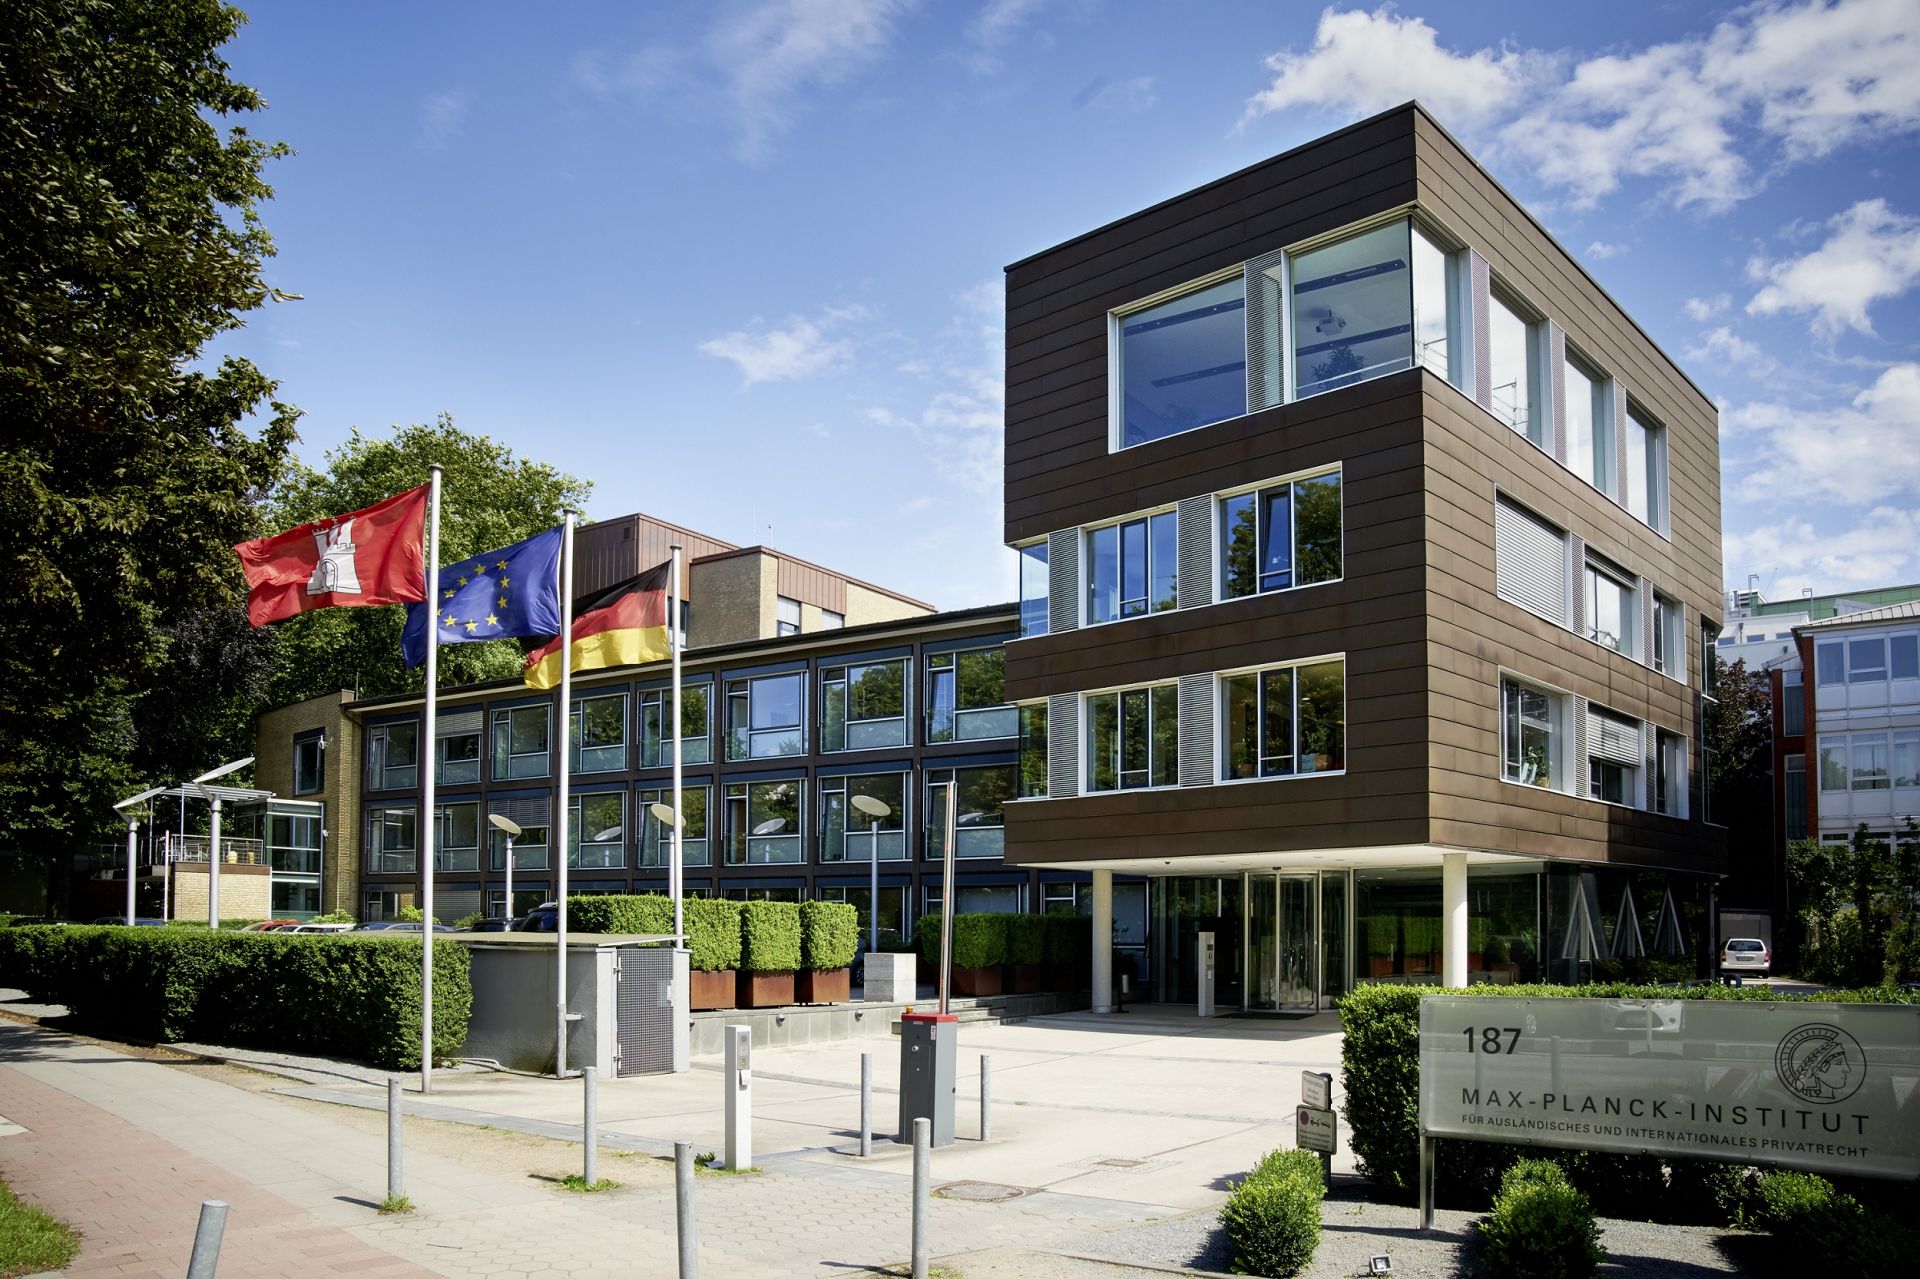 Max-Planck-Institut für ausländisches und internationales Privatrecht (Instytut Maxa Plancka do spraw Porównawczego i Międzynarodowego Prawa Prywatnego); fot. @mpipriv.de